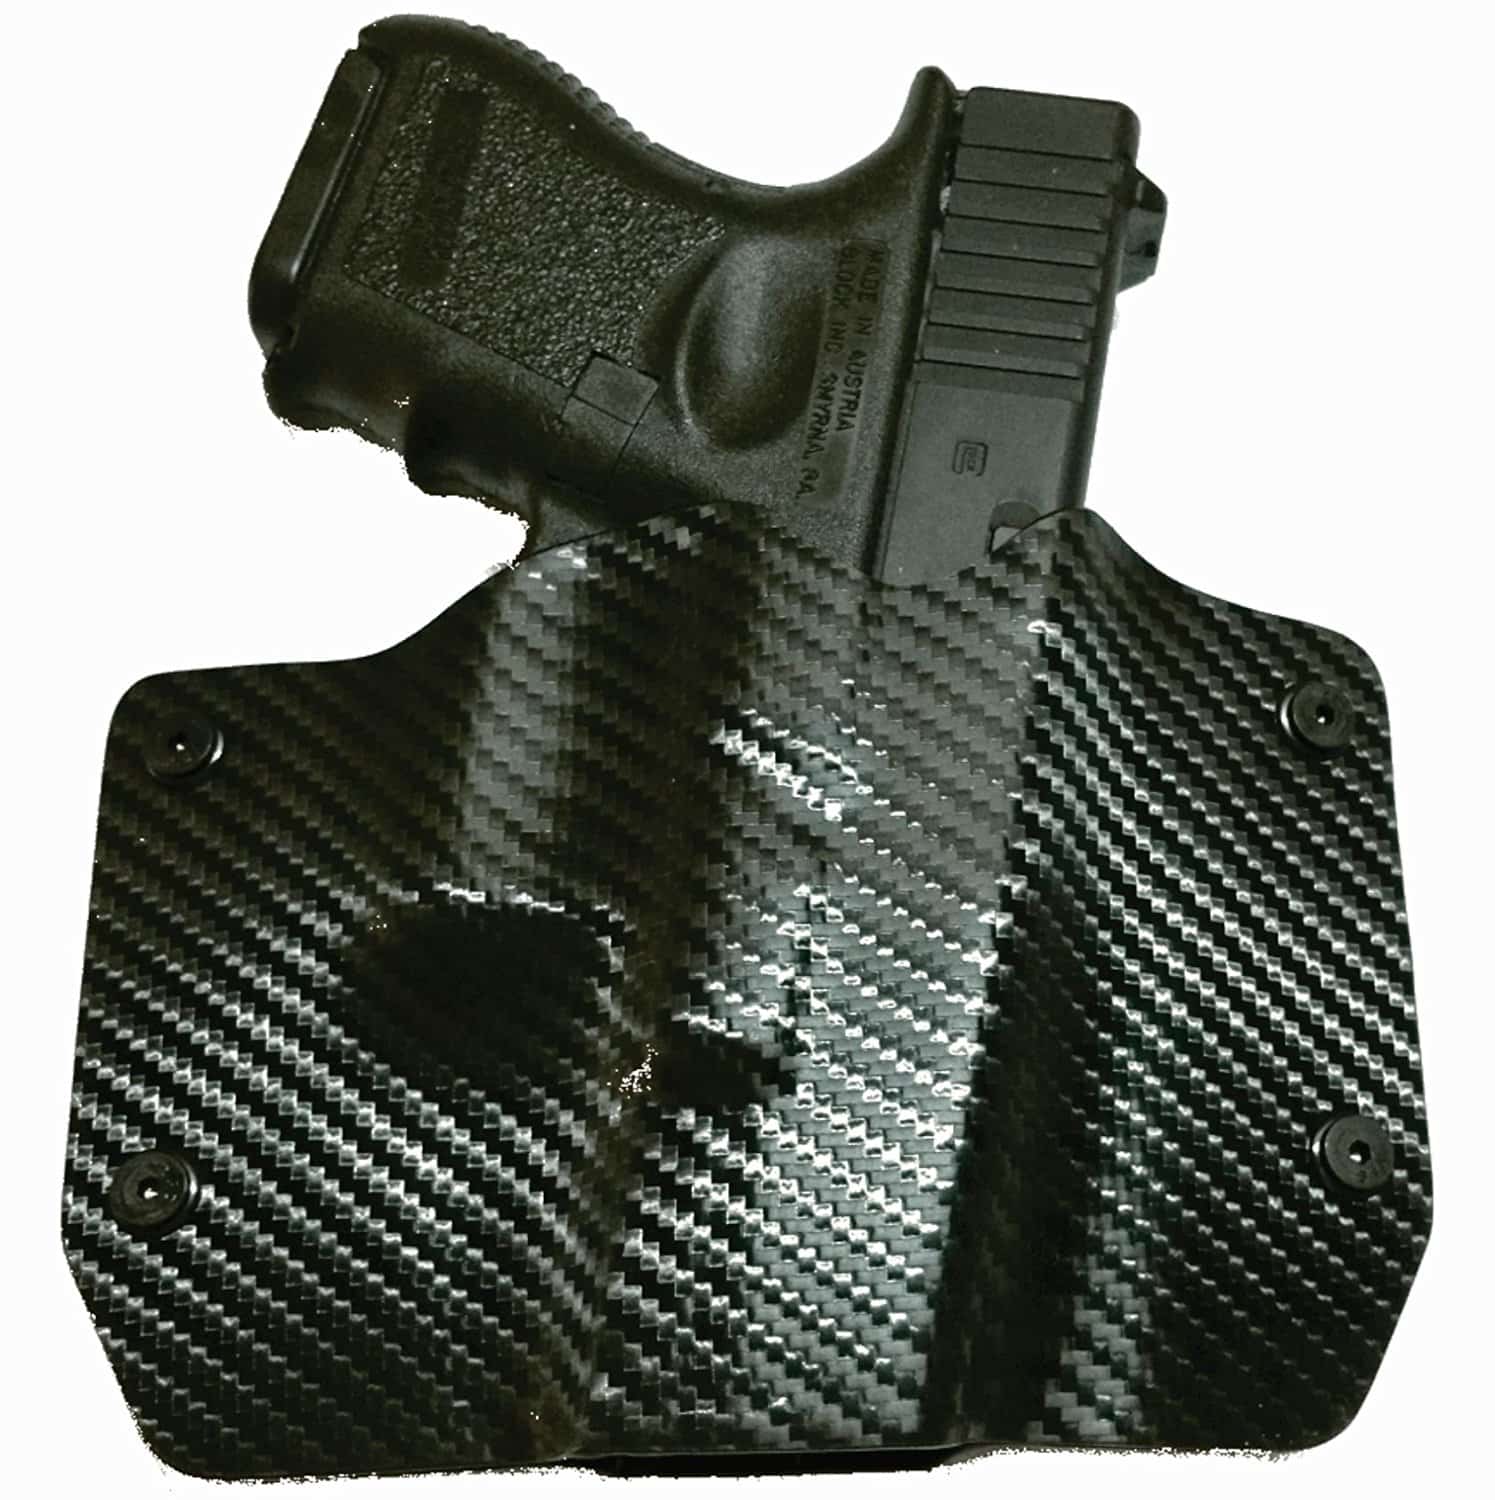 image of Black Carbon Fiber Kydex OWB holster with gun inside